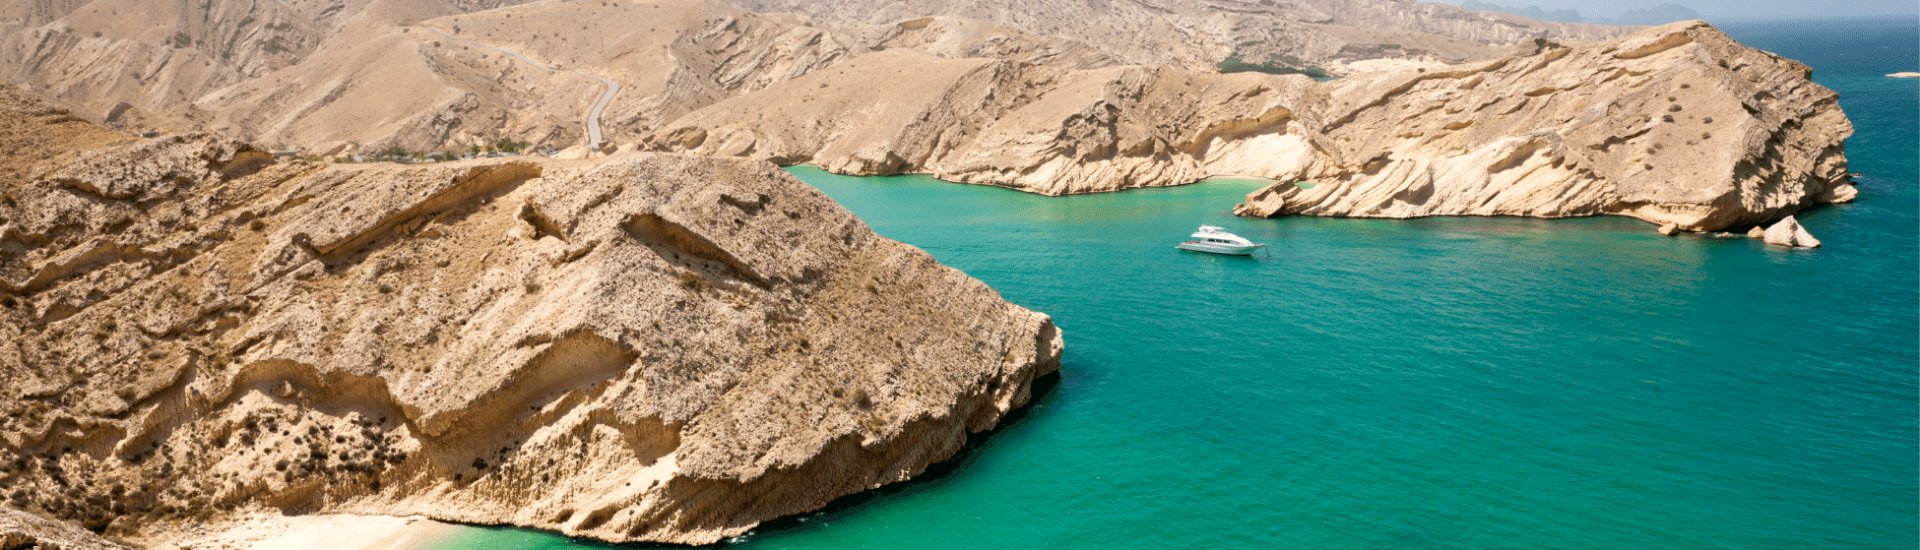 Oman-Arabian-Sea